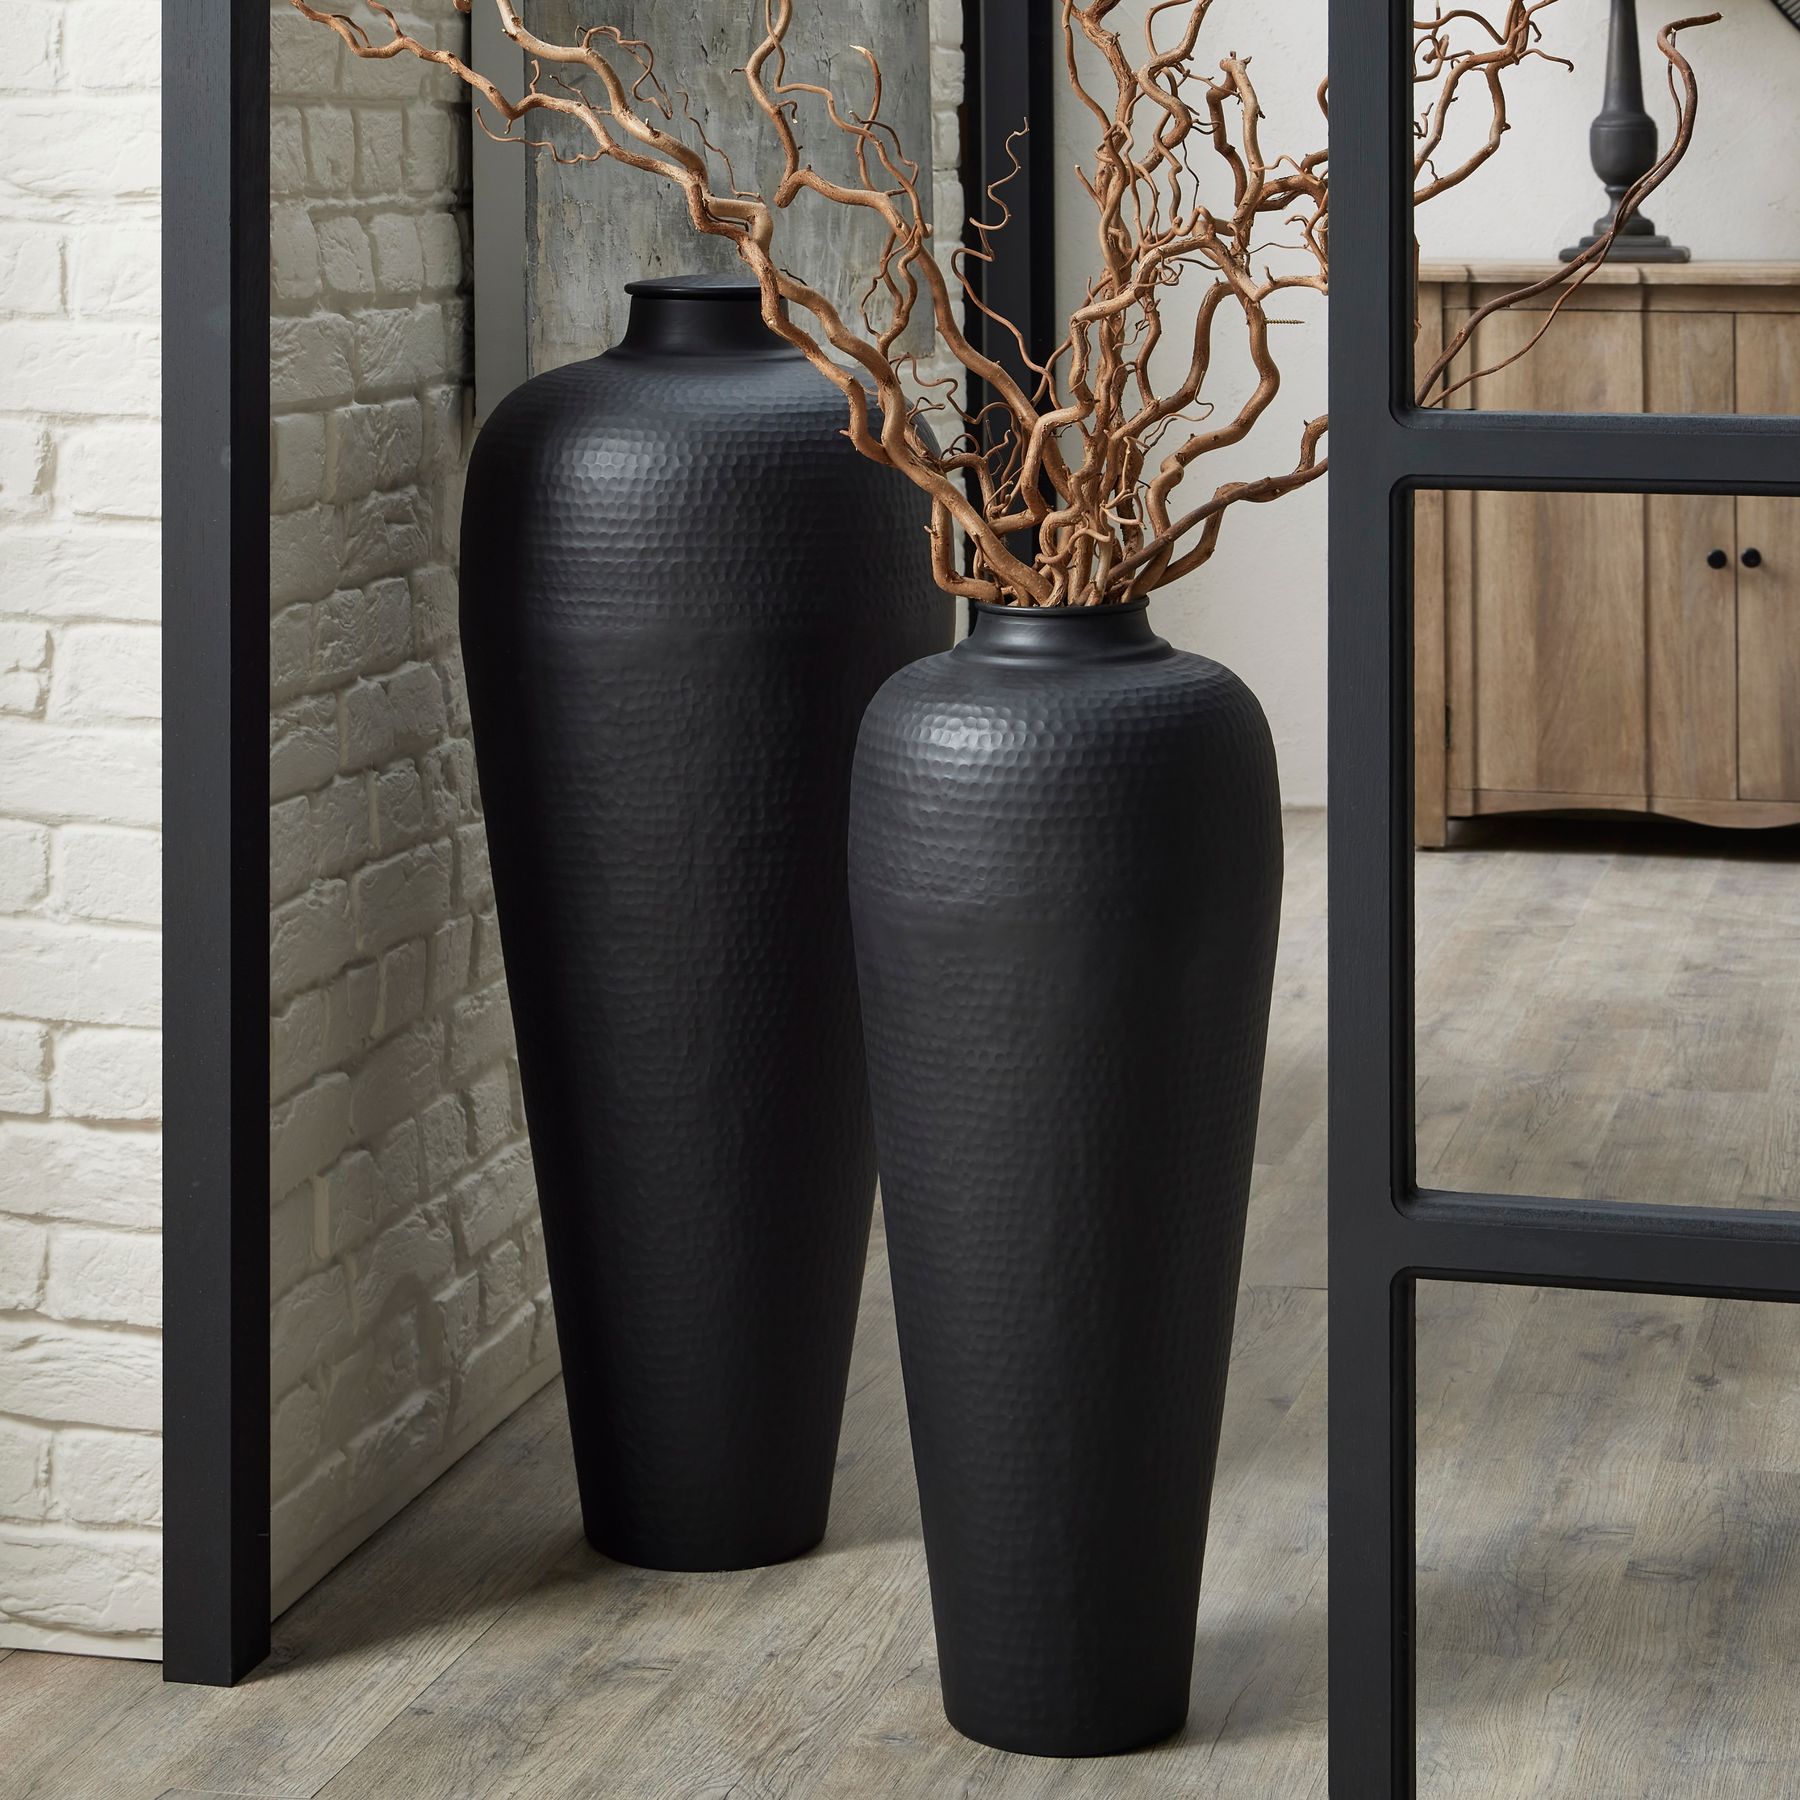 Matt Black Large Hammered Vase With Lid - Image 4